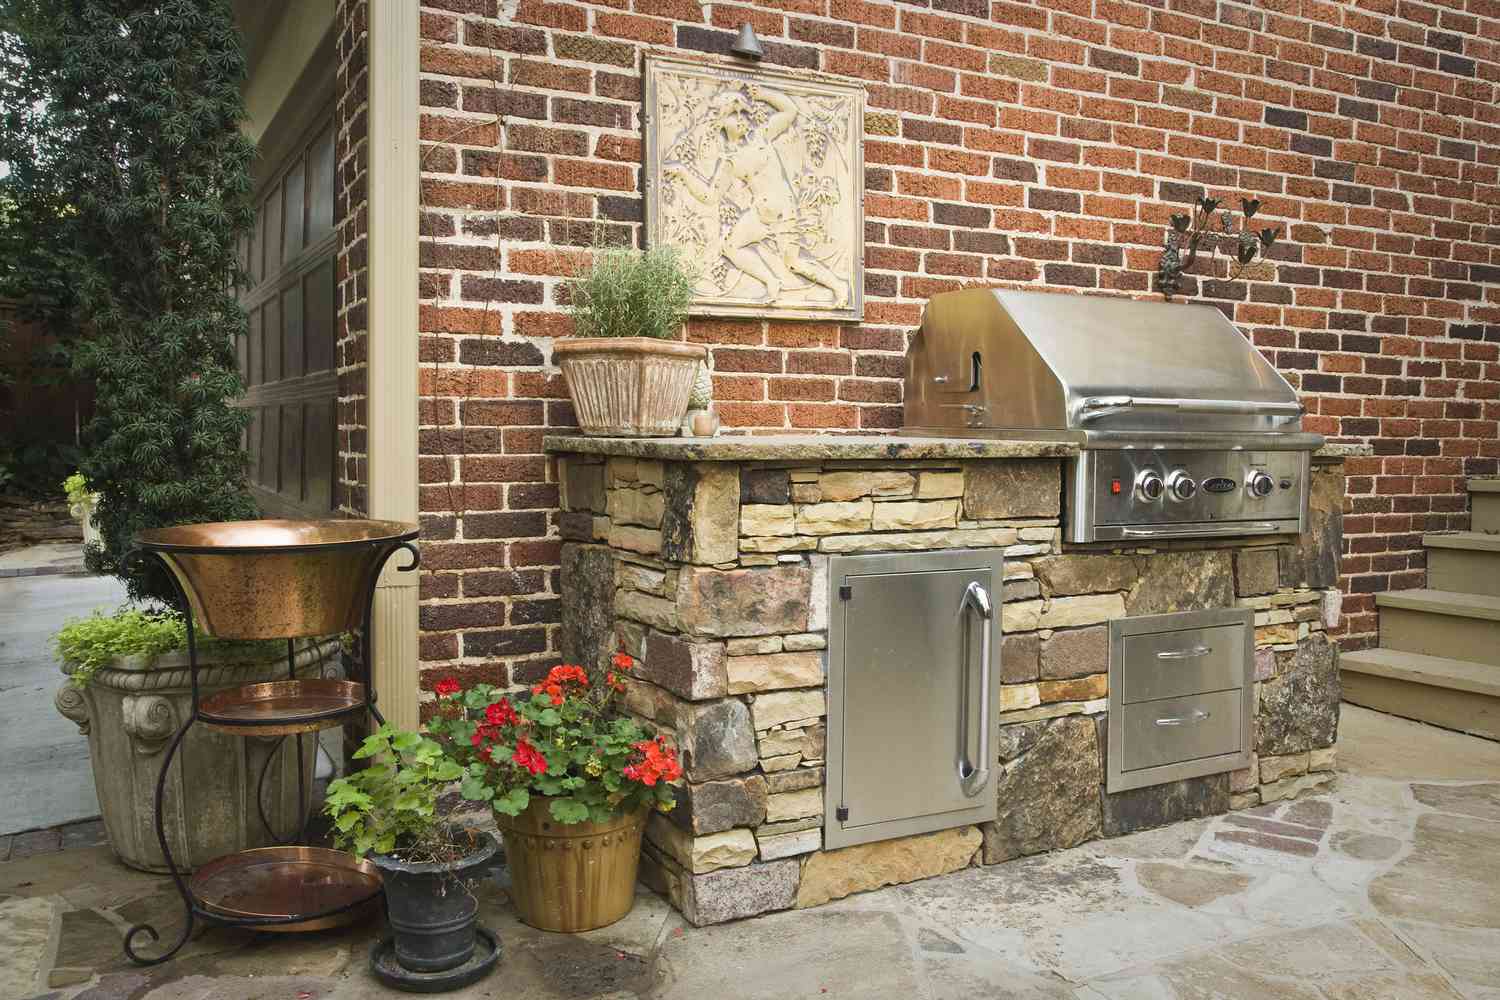 Mueble de cocina de piedra sobre patio de piedra contra pared de ladrillo.